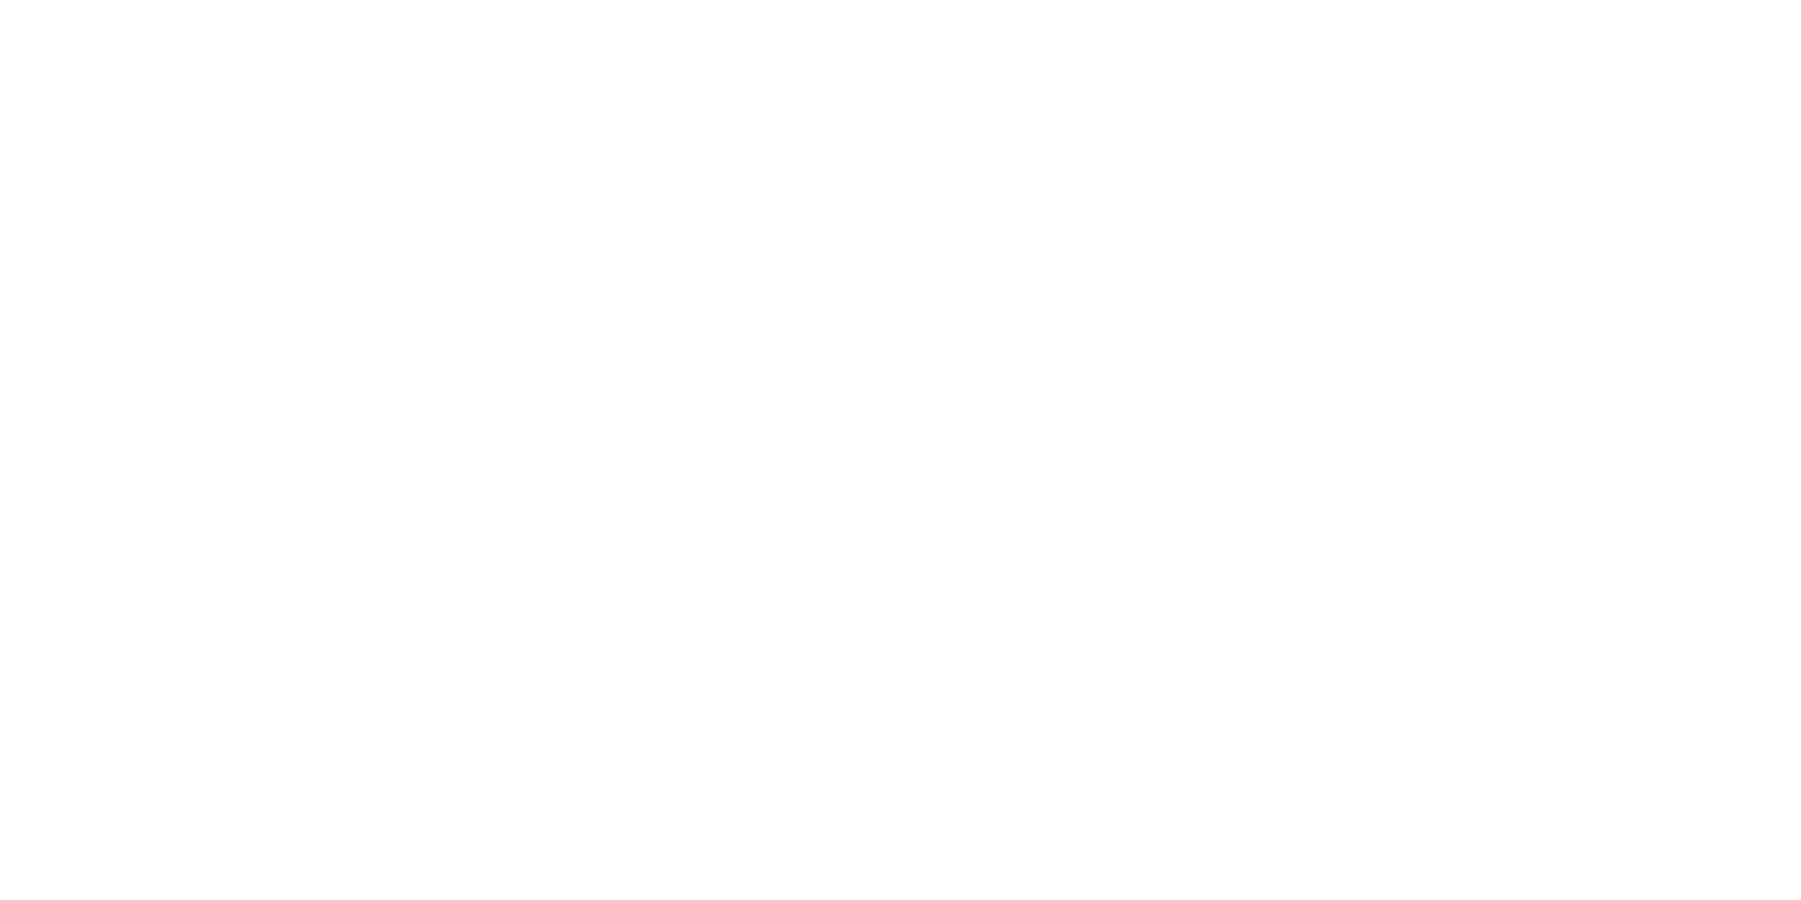 UMSL Digital- Certified Digital Marketing Certificate